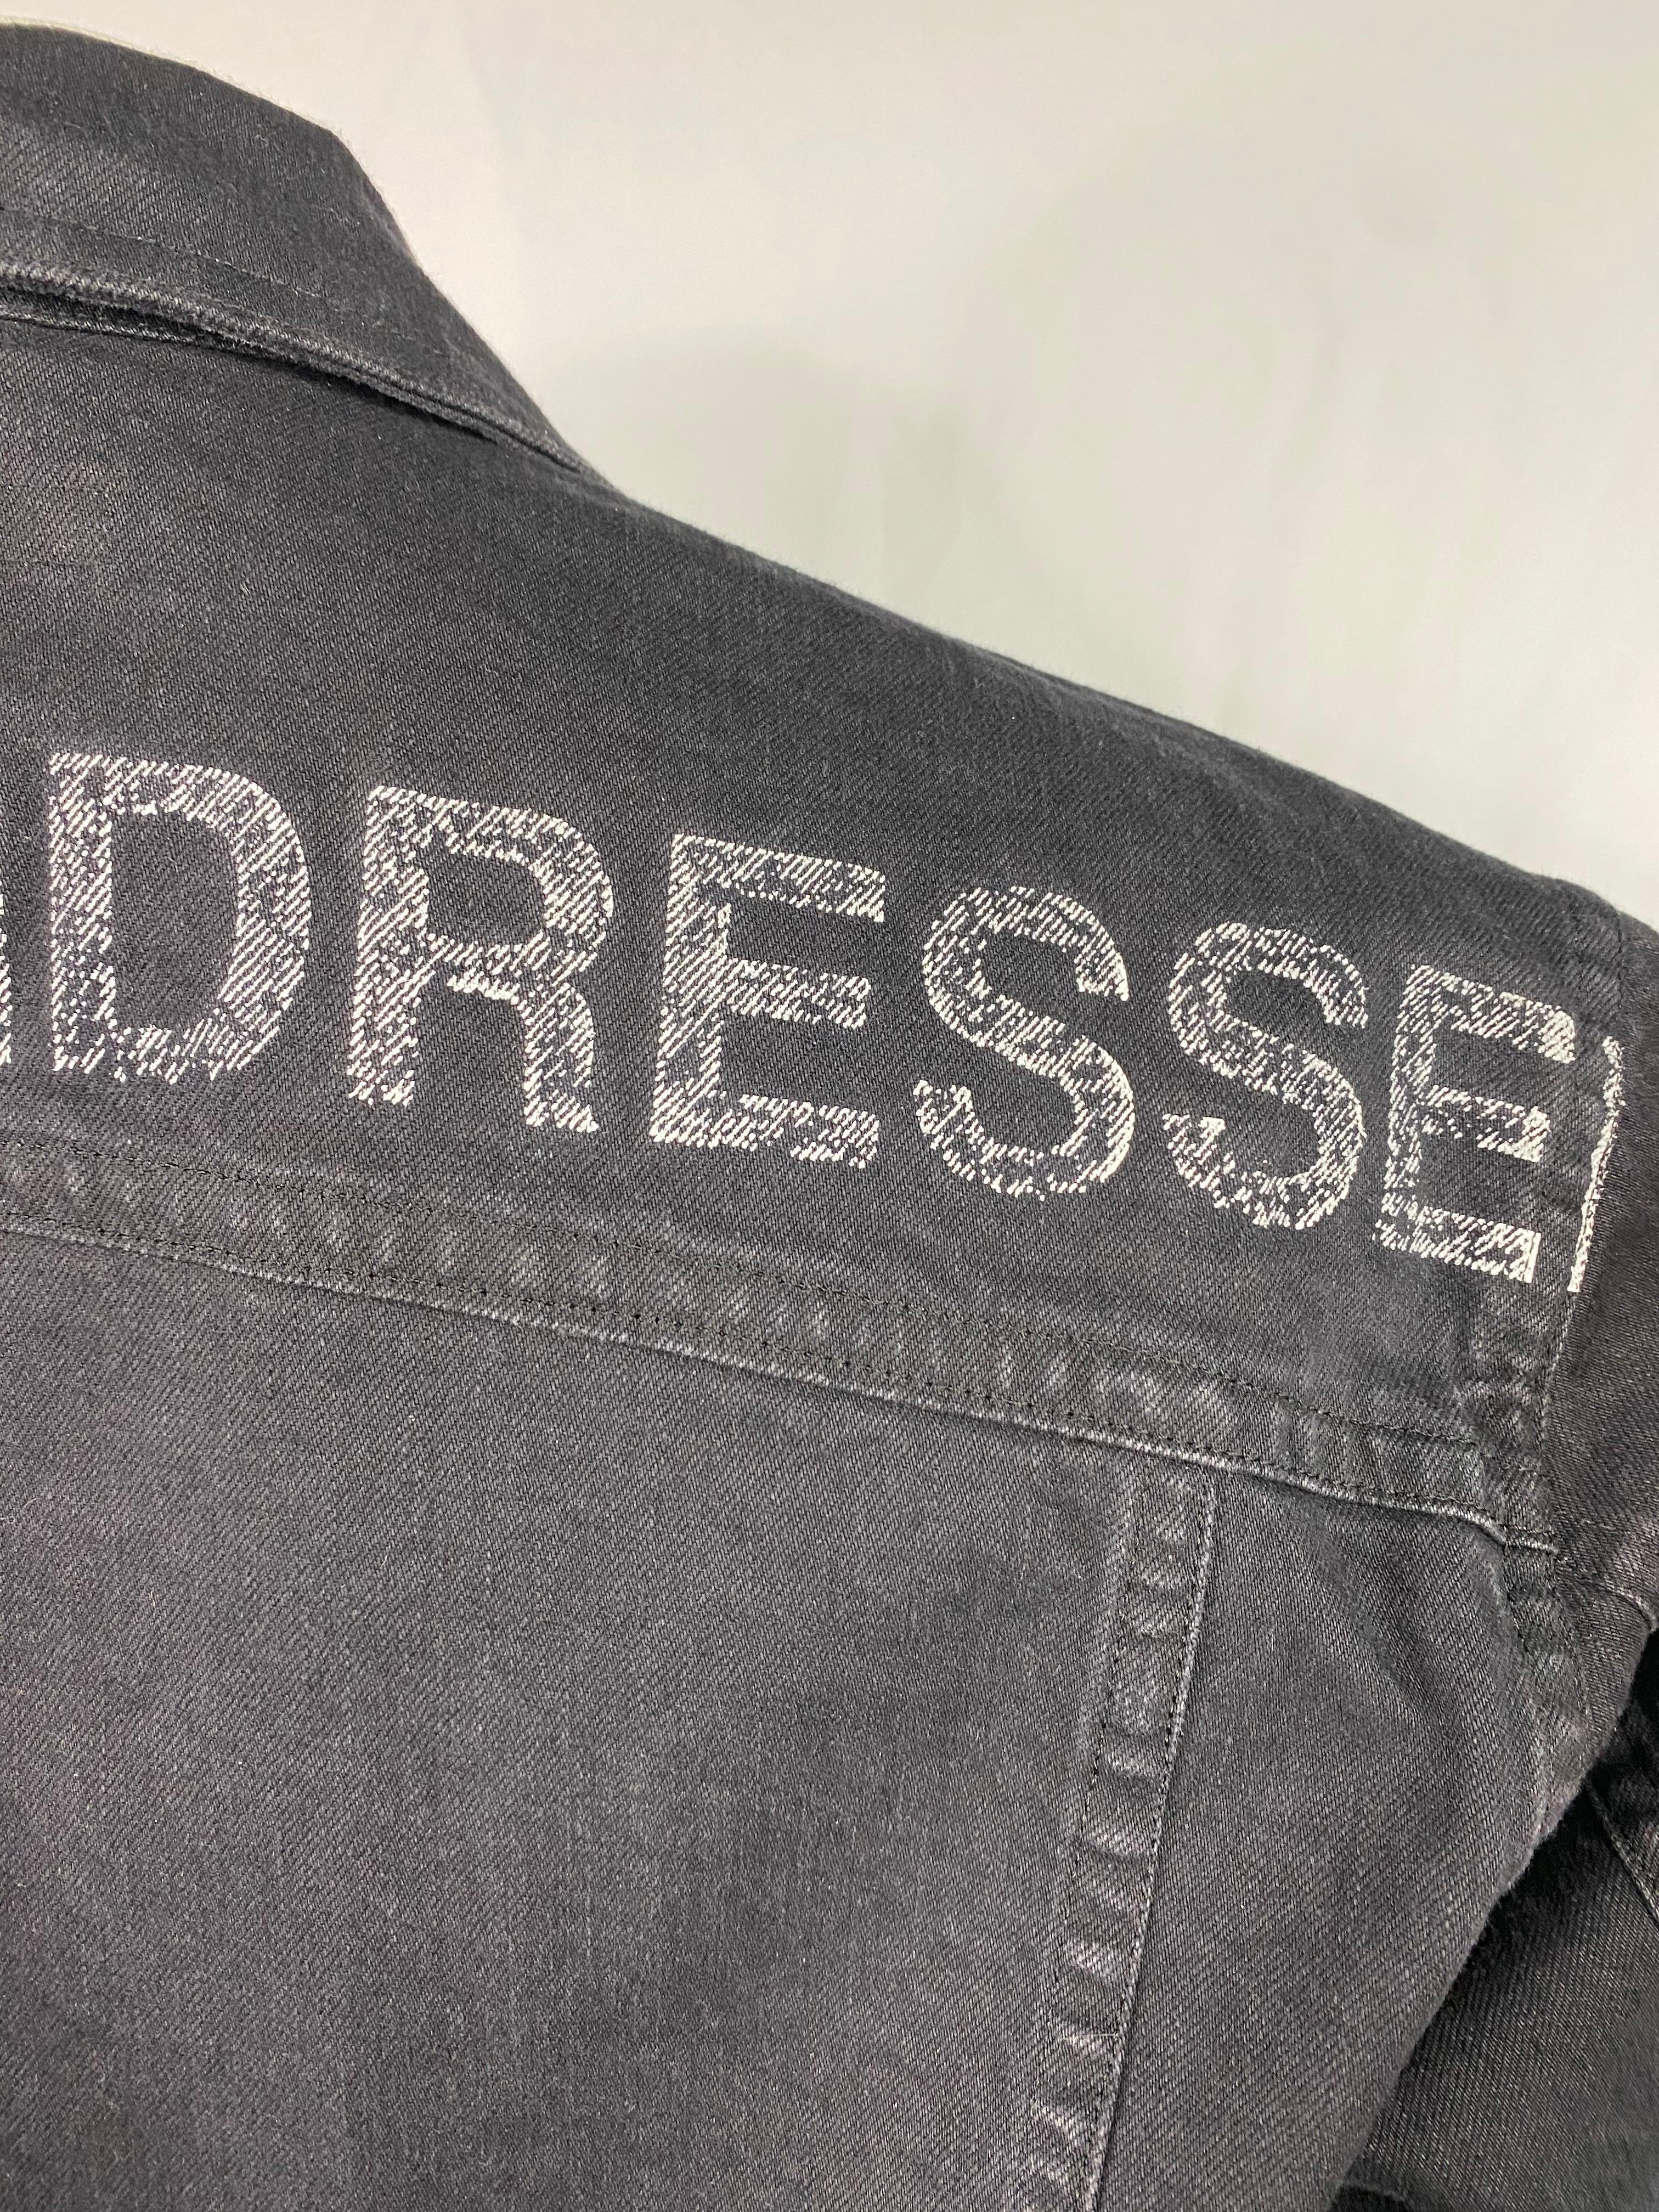 Dressedundressed Grey Denim Jacket, Size 3 For Sale 5